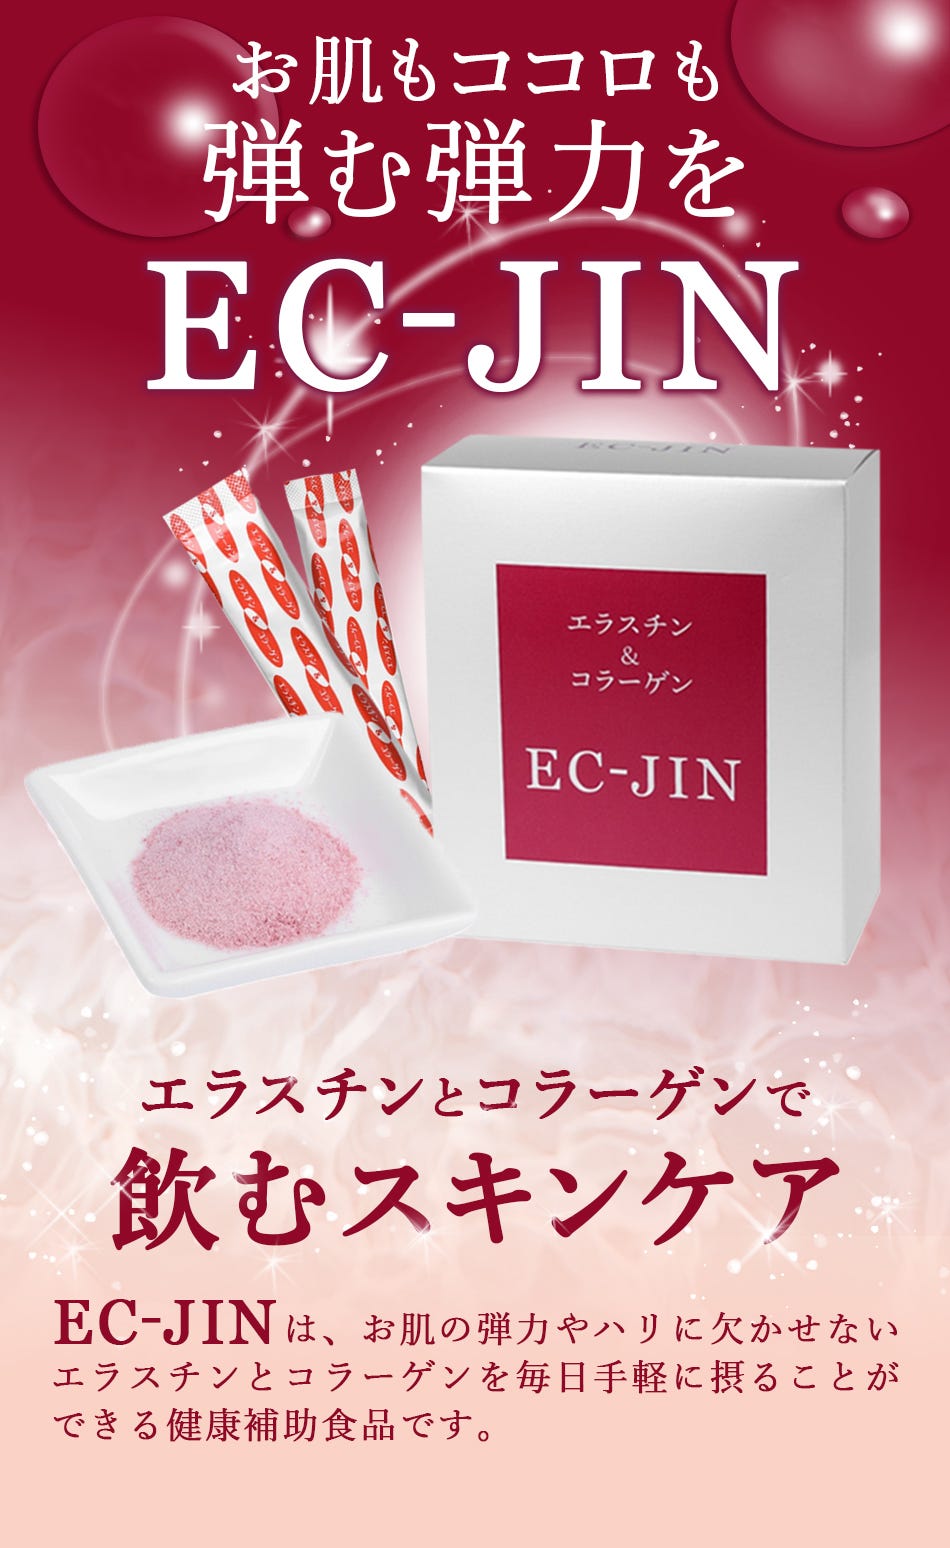 エラスチン&コラーゲンEC-JIN